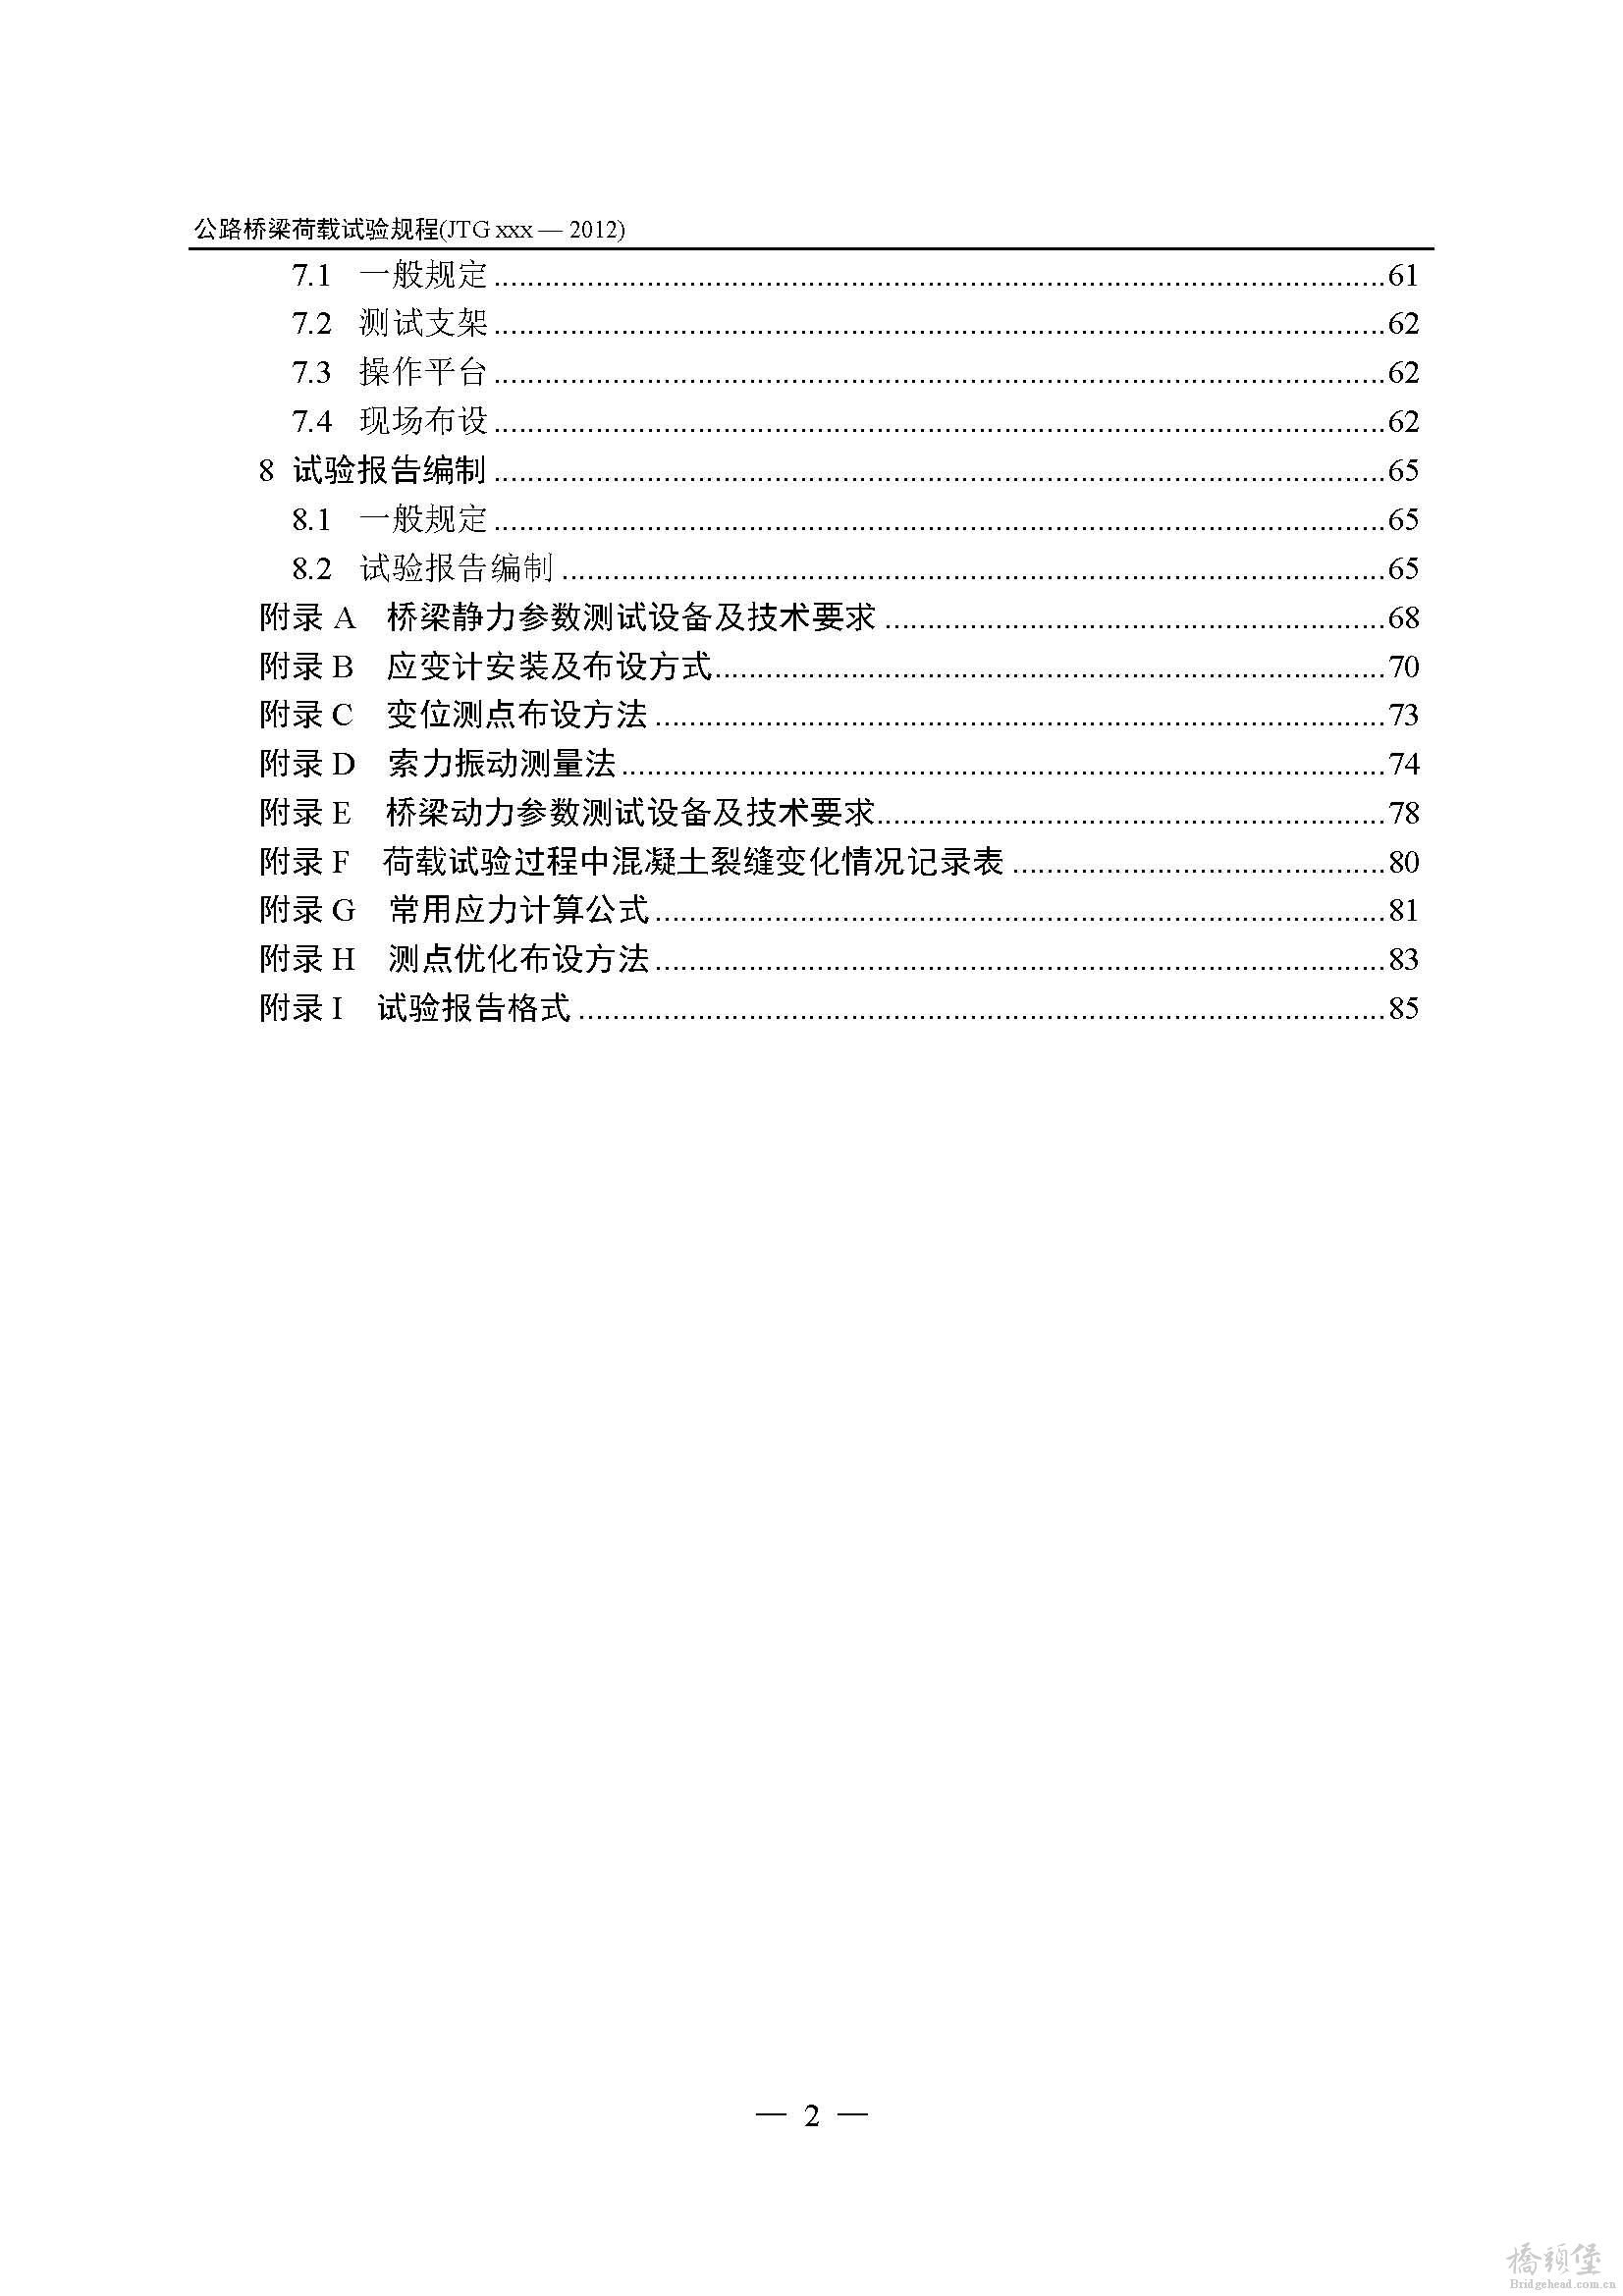 公路桥梁荷载试验规程_送审稿2014-4-14_页面_08.jpg